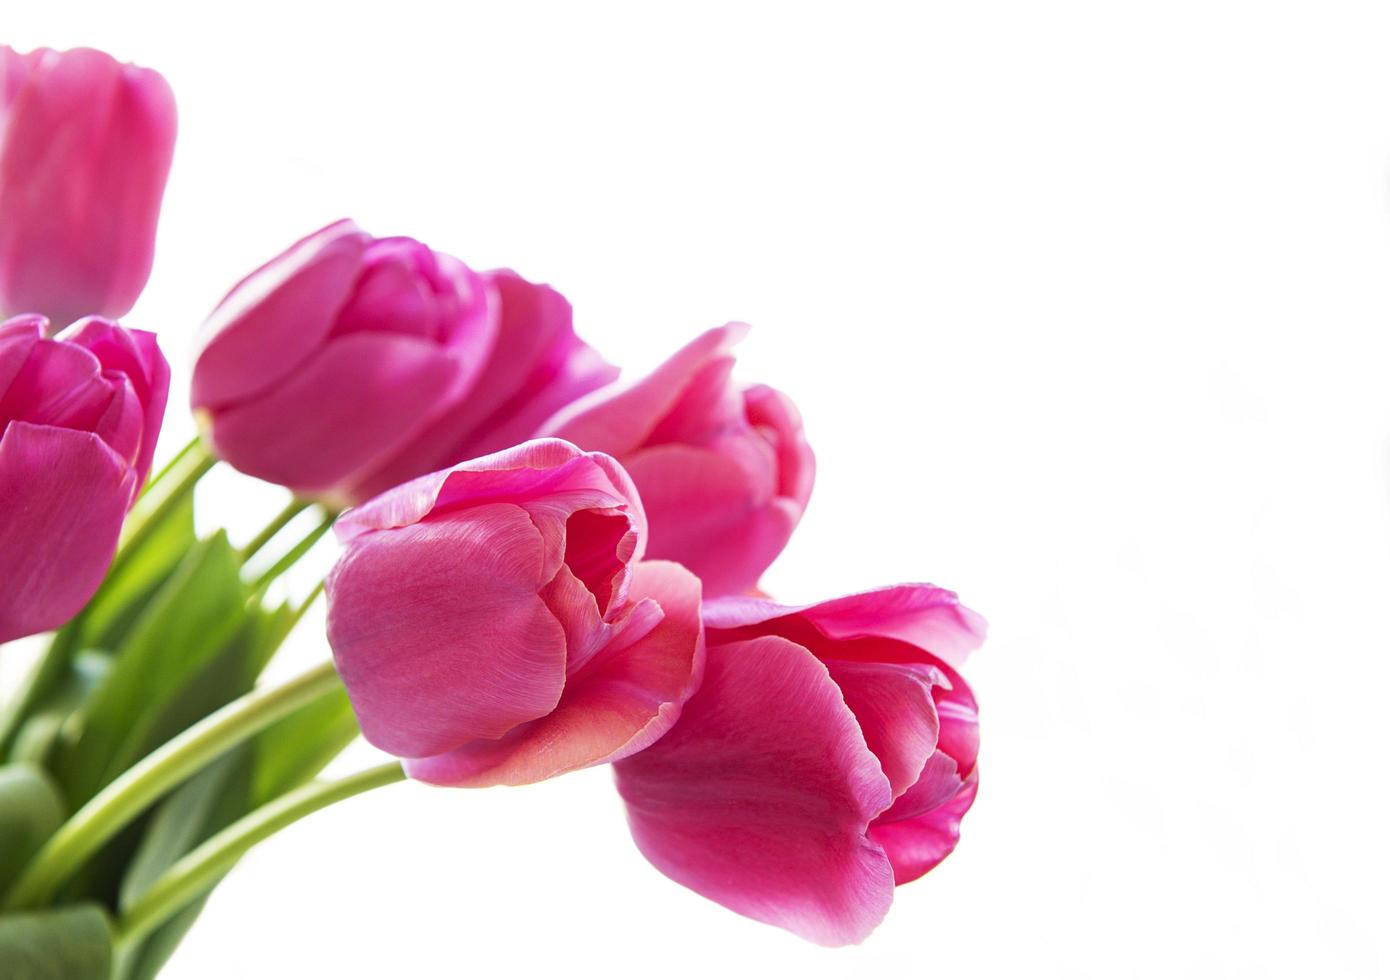 bellissimo bouquet di tulipani foto